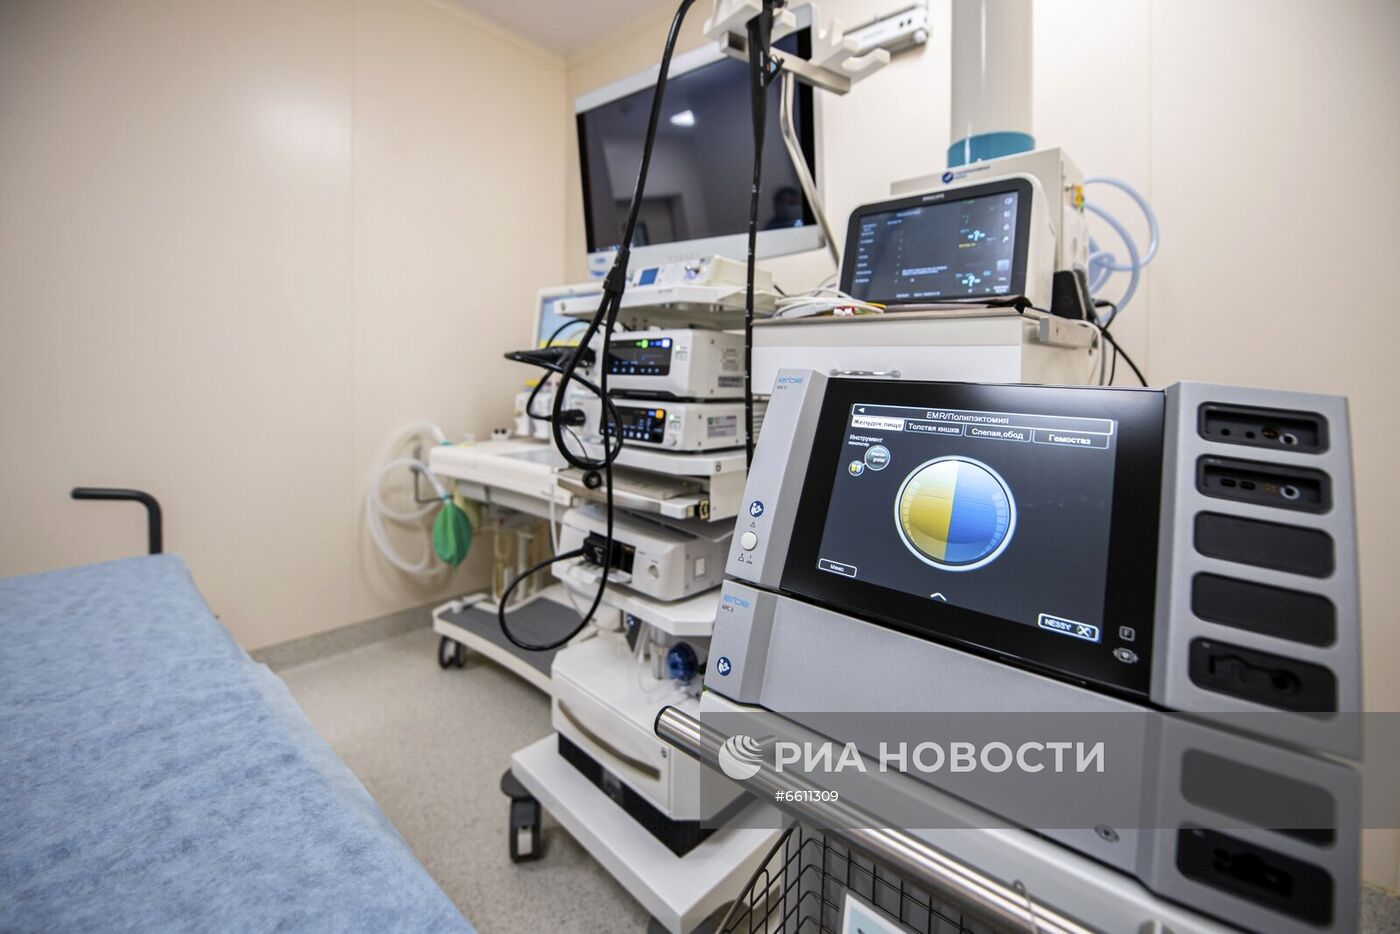 Открытие эндоскопического центра в ГКБ имени С. П. Боткина